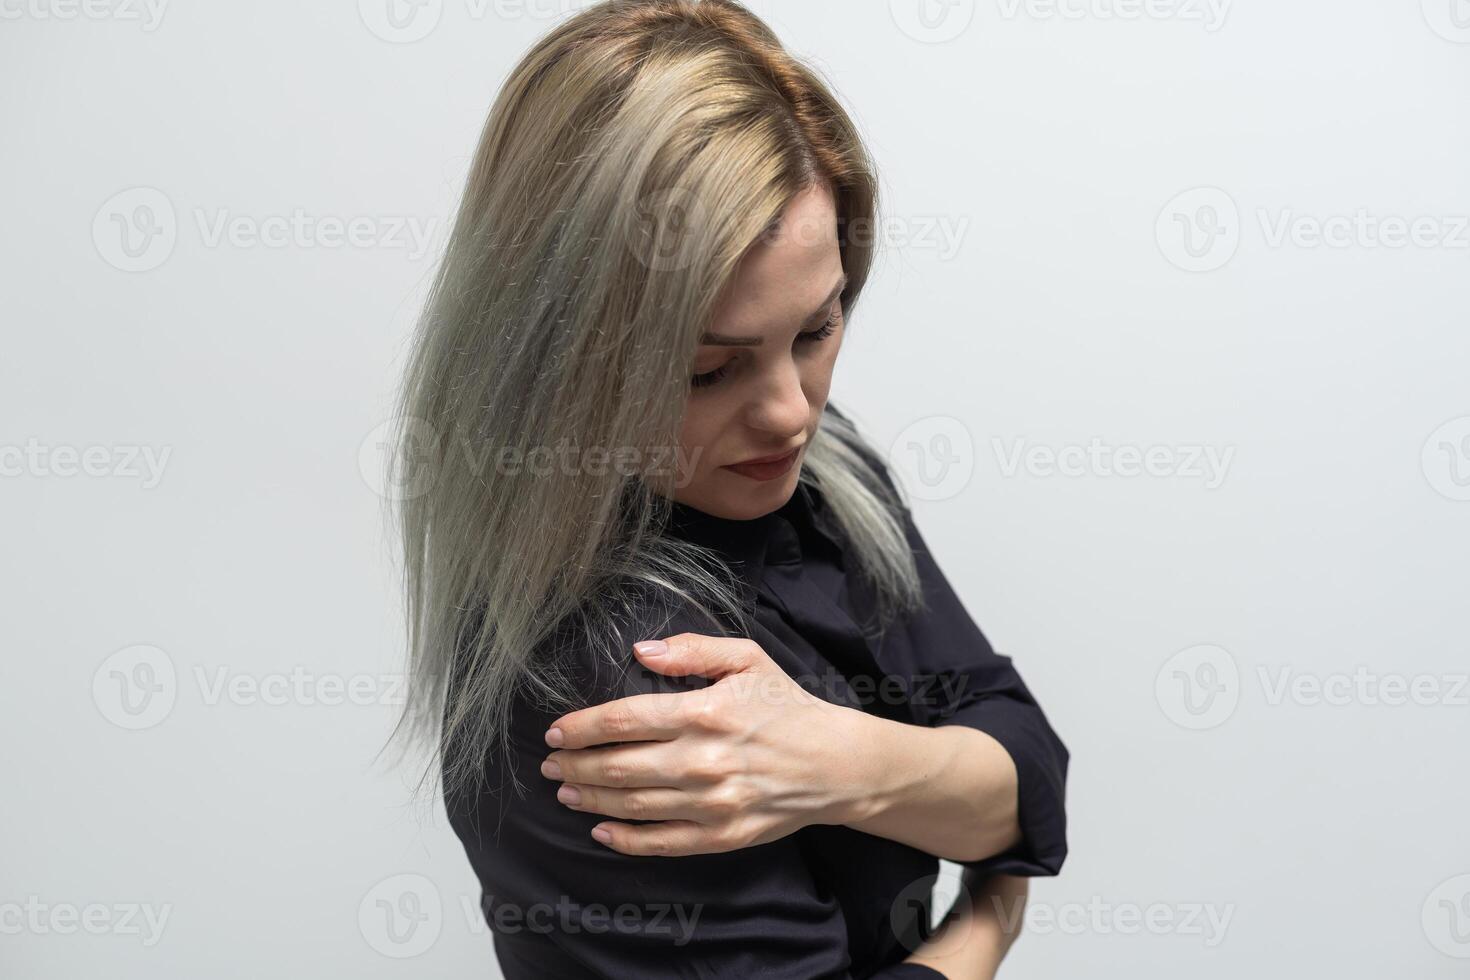 mulher mão dentro branco camiseta toque dela superior braço , braço dor e músculo prejuízo conceito. foto